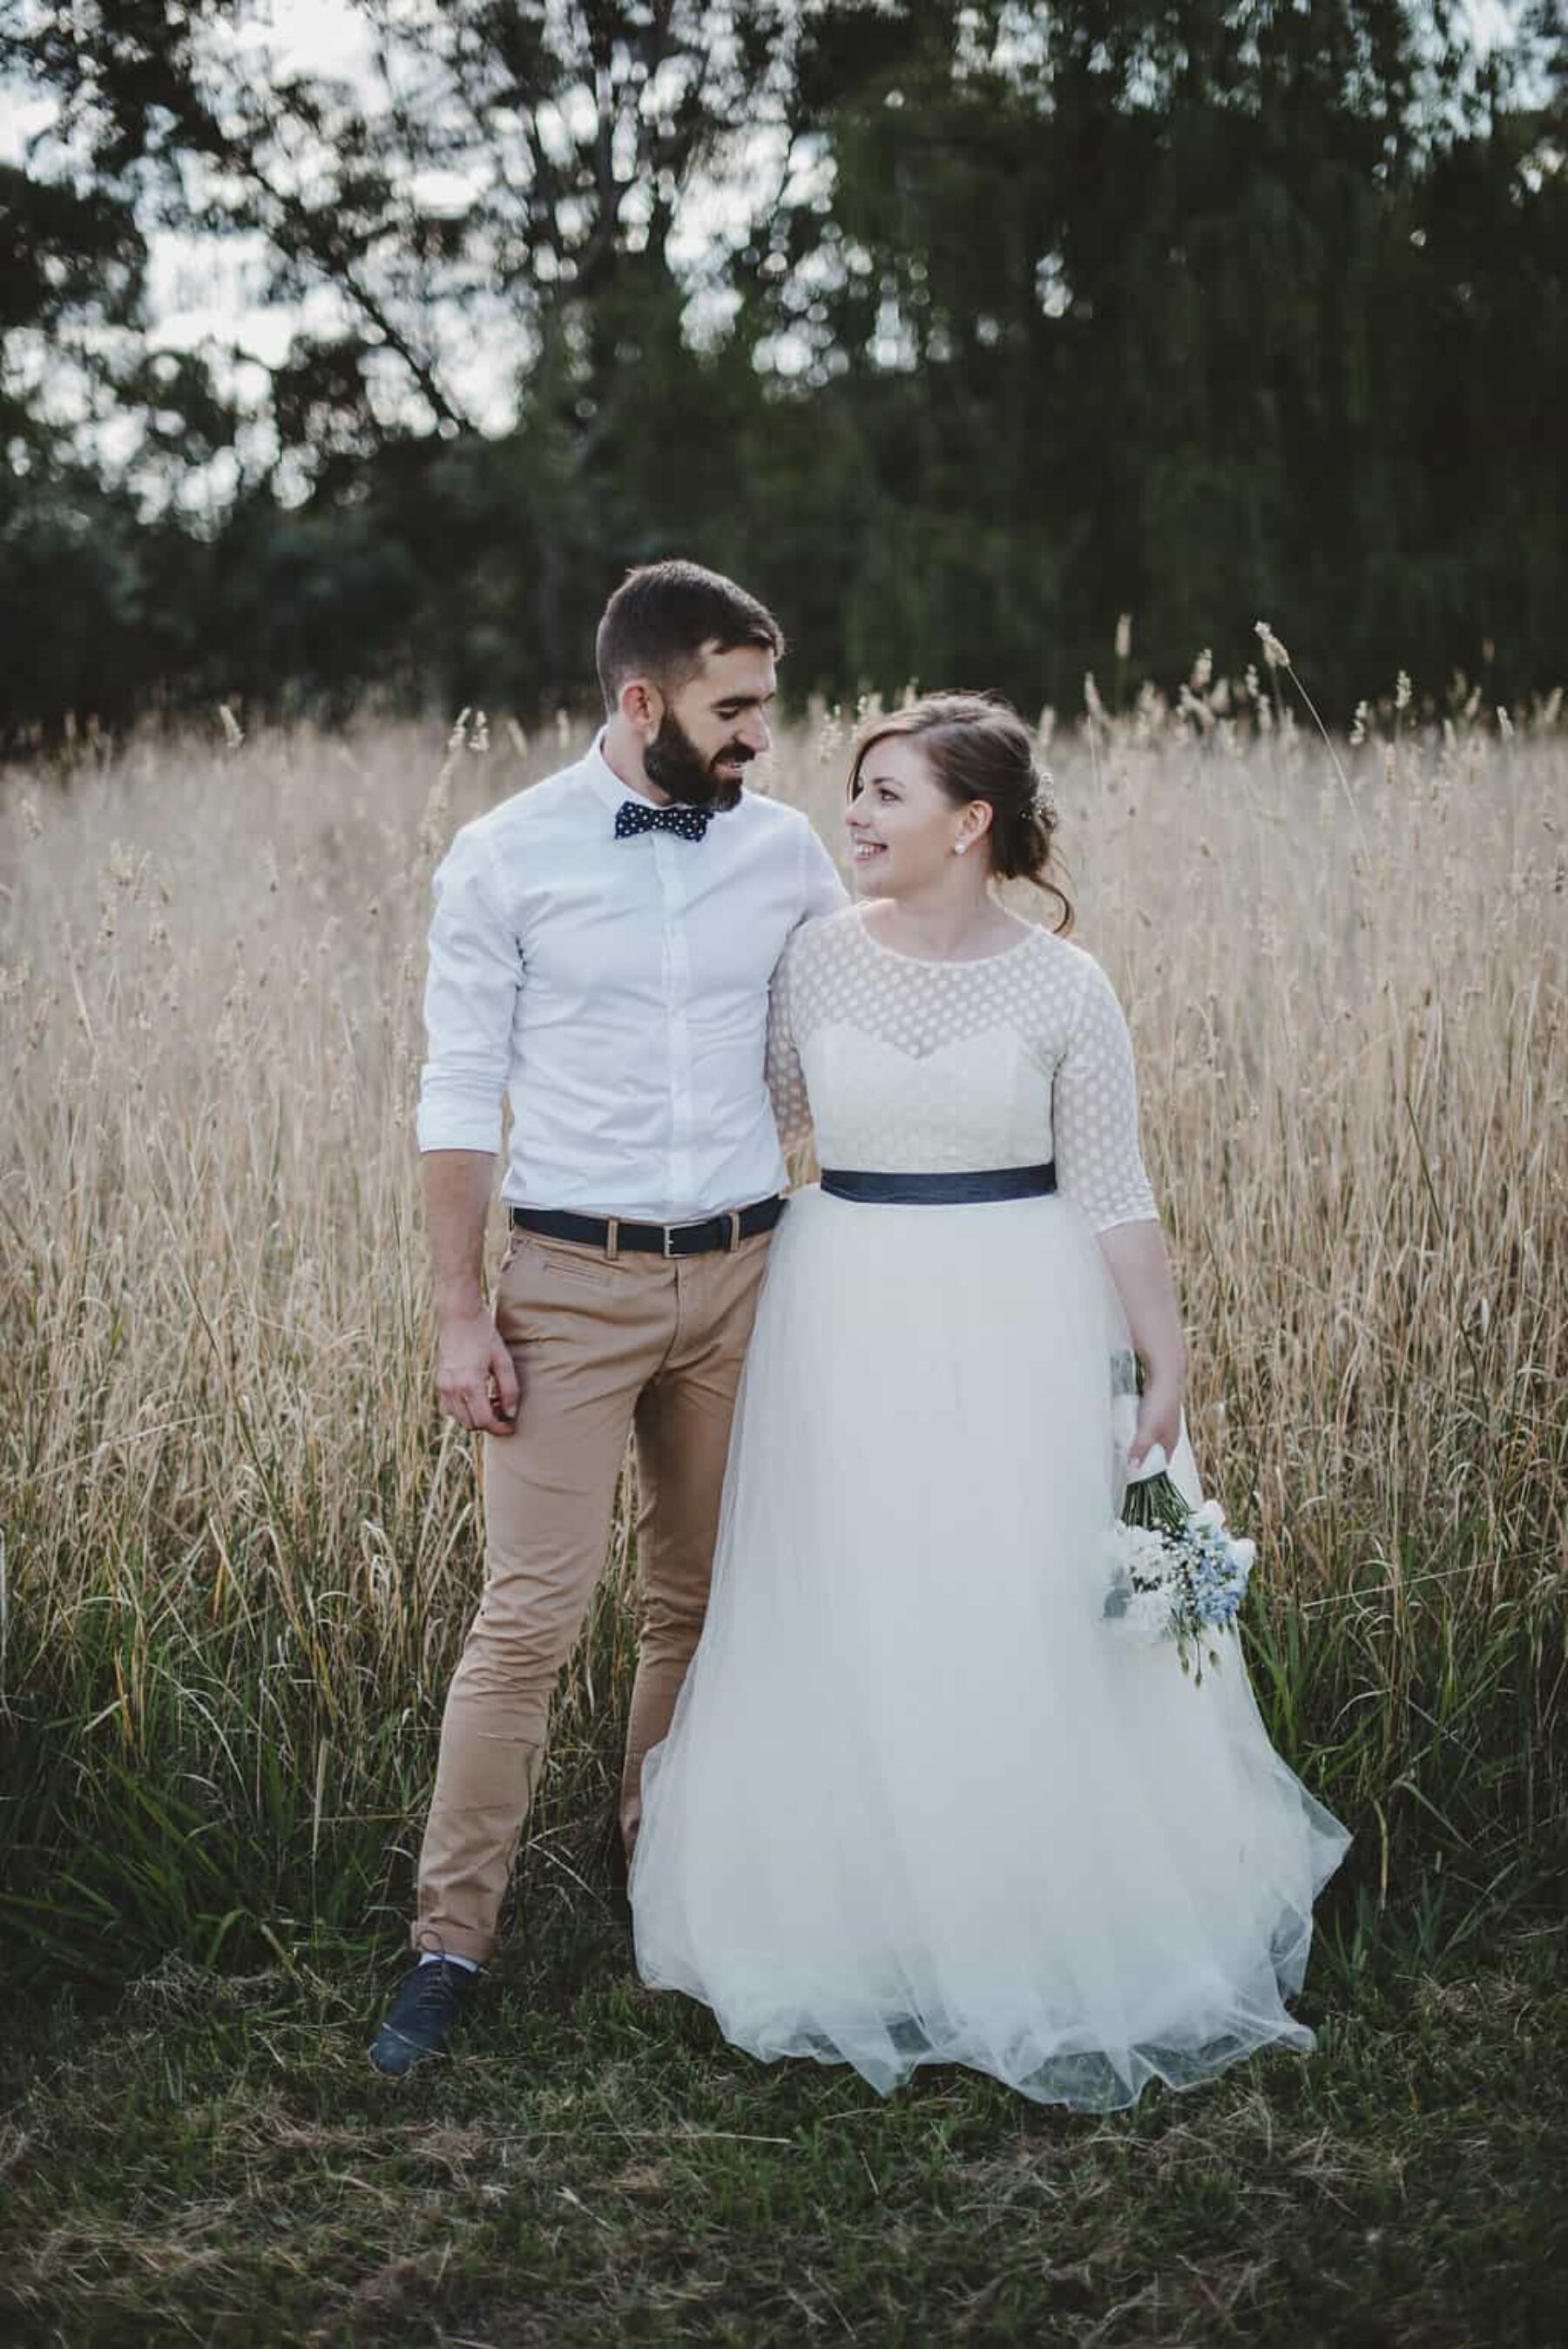 Canberra wedding photographer Lauren Campbell